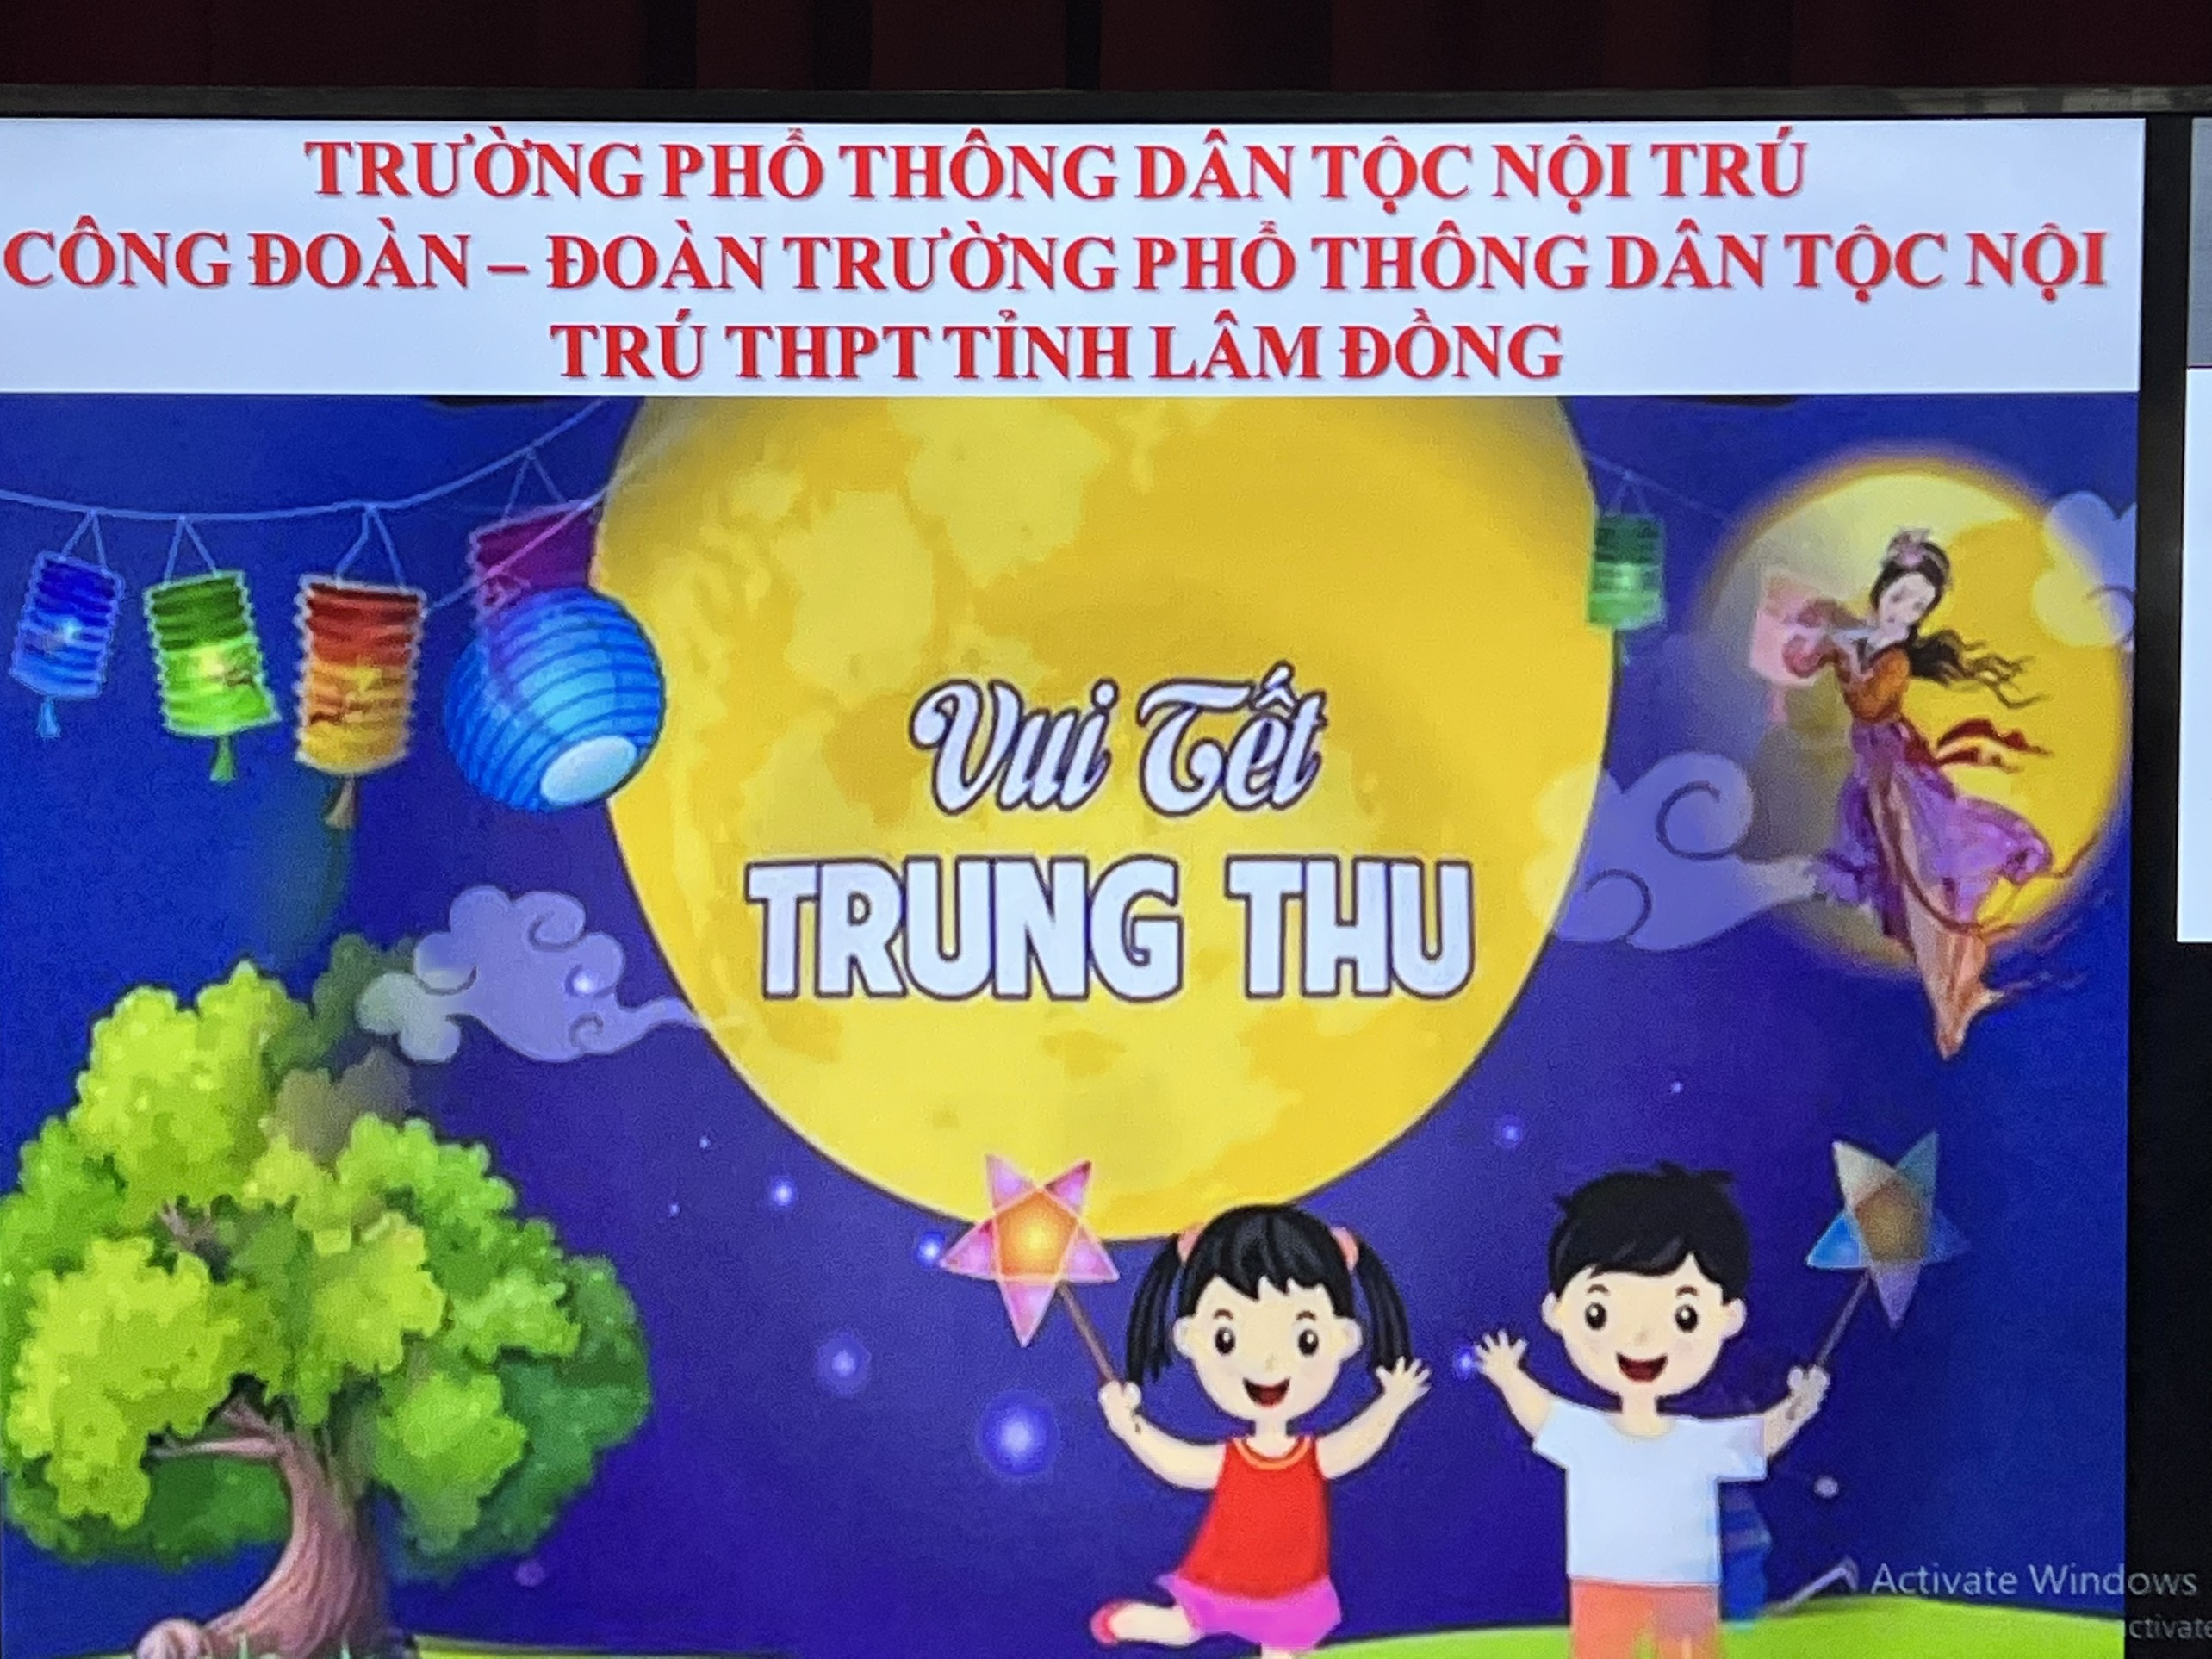 Trung thu tại mái trường Nội trú tỉnh Lâm Đồng